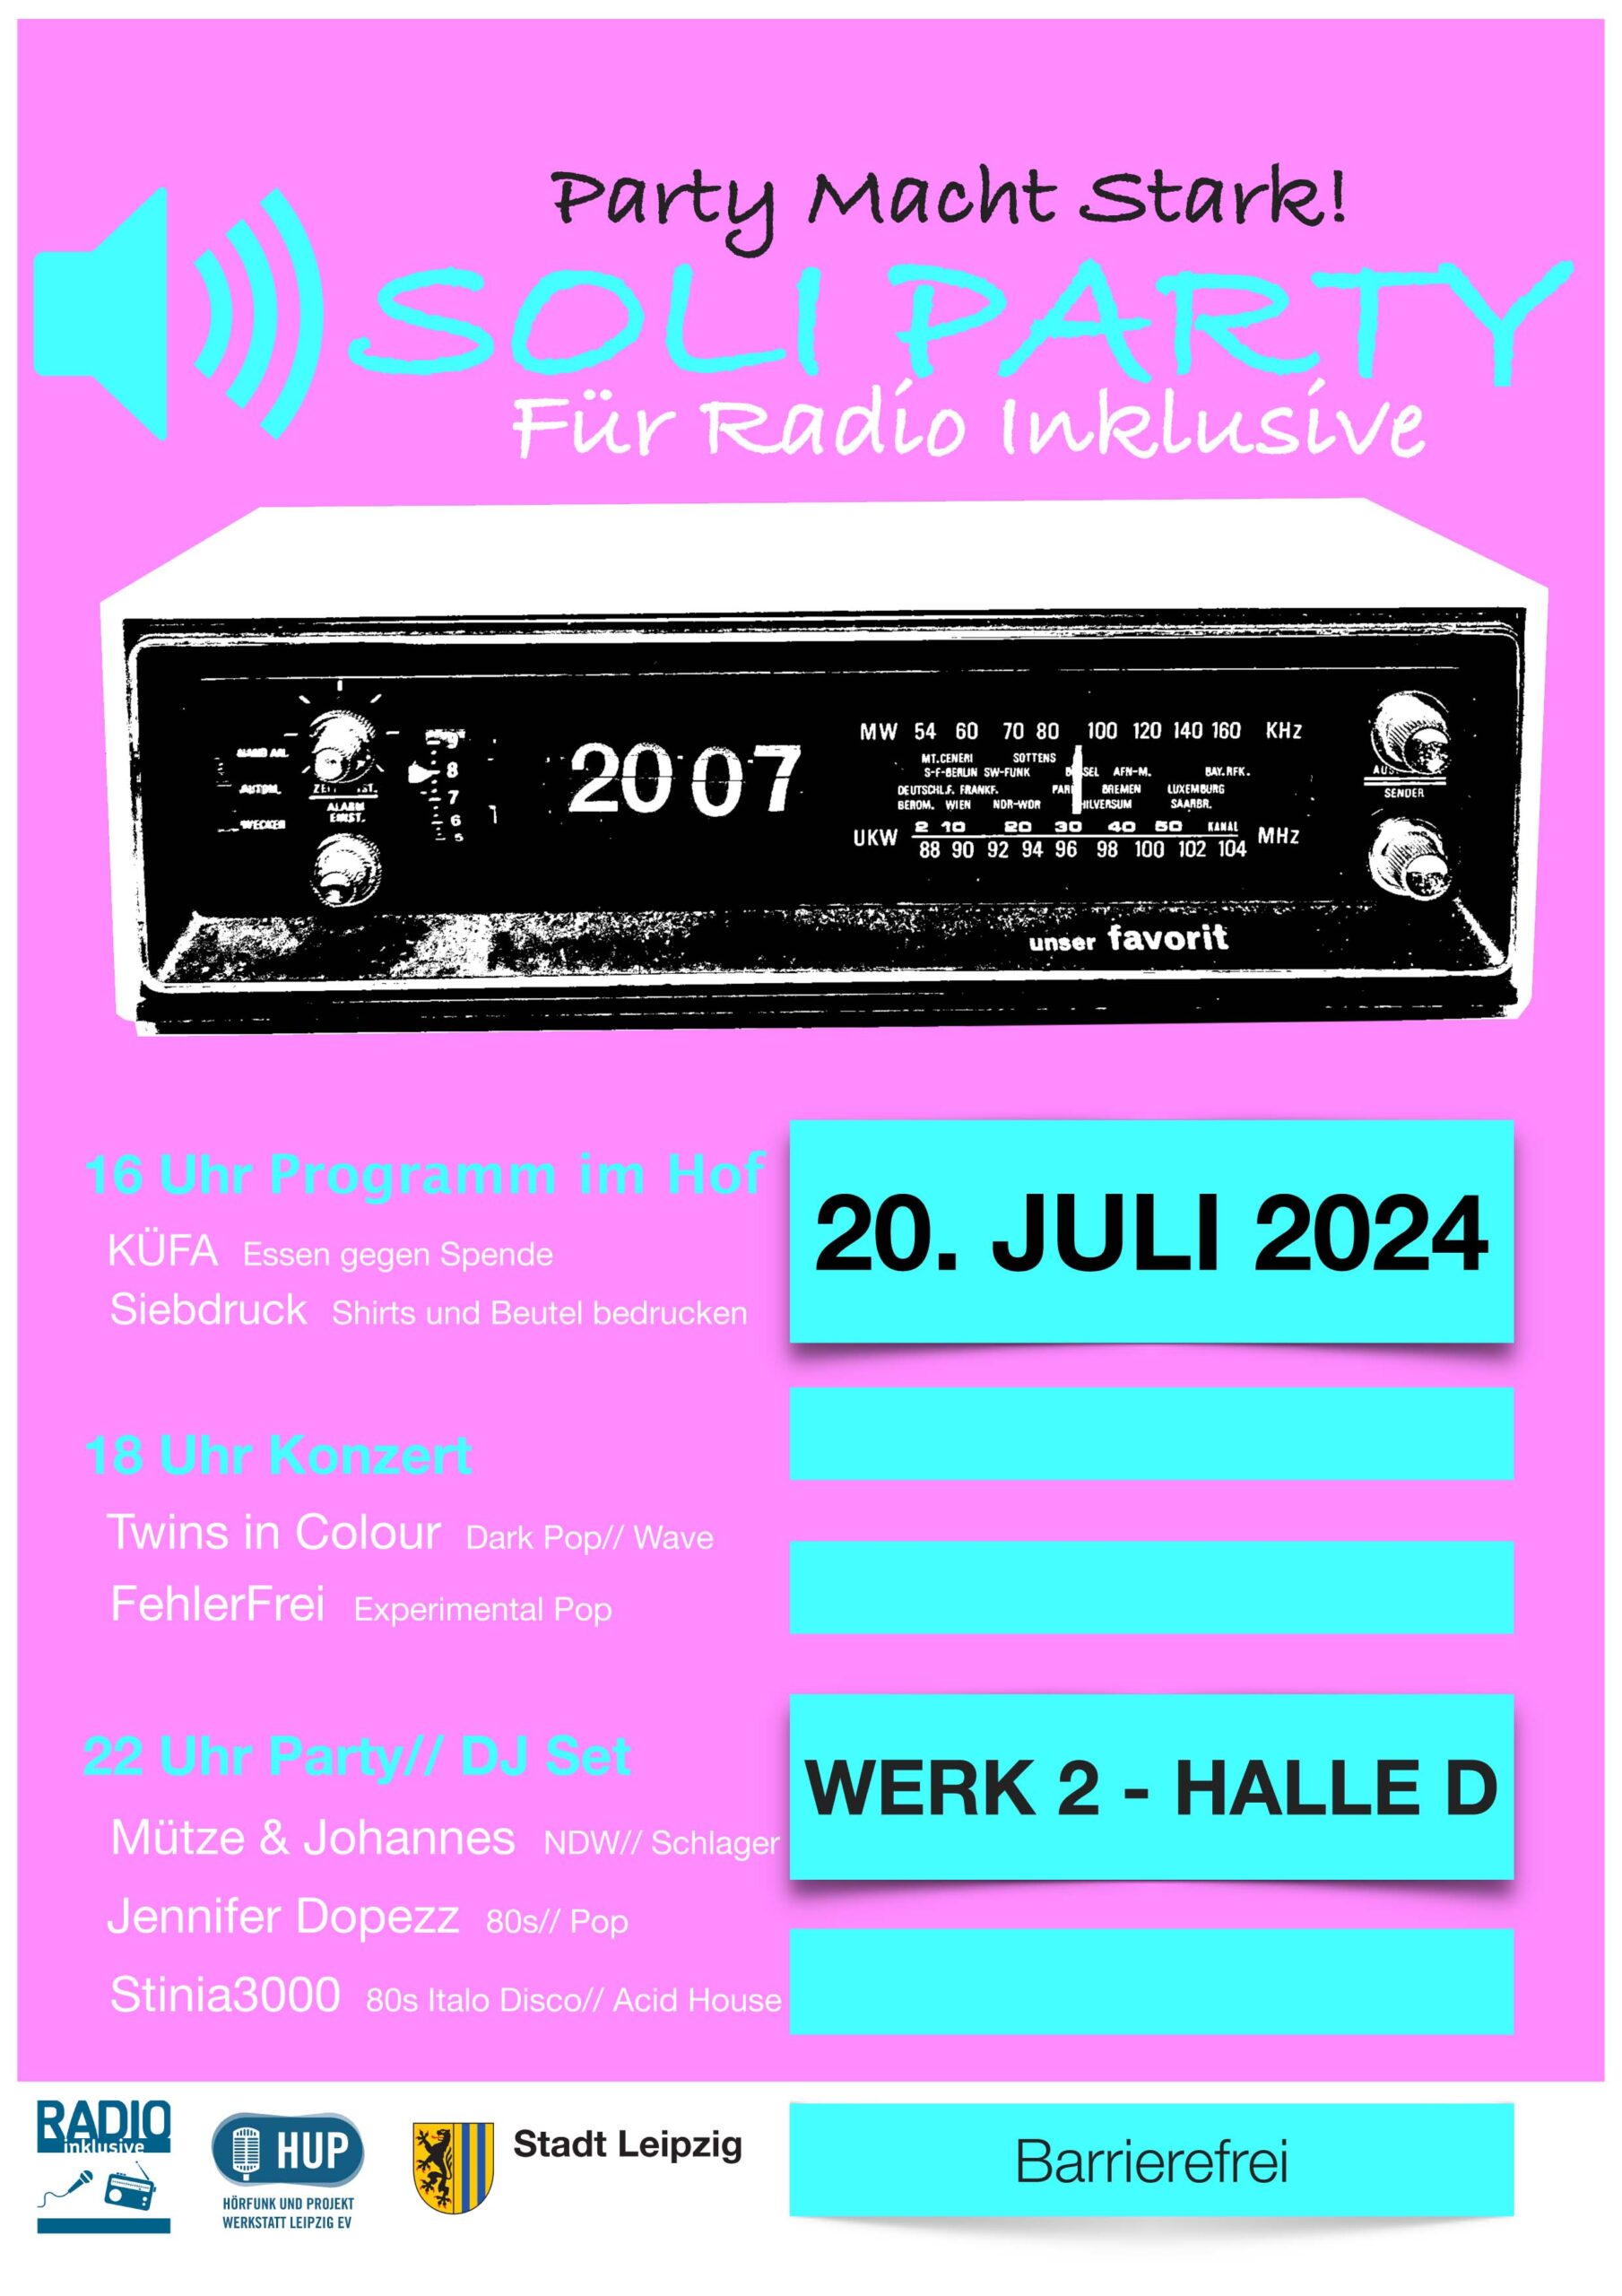 Ein Ankündigungsplakat für unsere Soli-Party. Um einen alten Radio-Wecker stehen folgende Informationen: "Party macht stark!" Soli-Party für Radio Inklusive. Samstag, 20.07.2024, Werk 2 - Halle D in Leipzig, 16-18 Uhr Küfa (Essen gegen Spende) + Siebdruckwerkstatt, 18-1 Uhr Live-Musik und DJ-Musik. Bands: FehlerFrei (Experimental Pop), Twins in Colour (Dark Pop / Wave) . DJ: DJ-Team Mütze + Johannes (NDW, Pop, Schlager), DJ Jennifer Dopezz (80s, Pop), DJ Stinia 3000 (80s Italo Disco, Acid House). Barrierefrei.